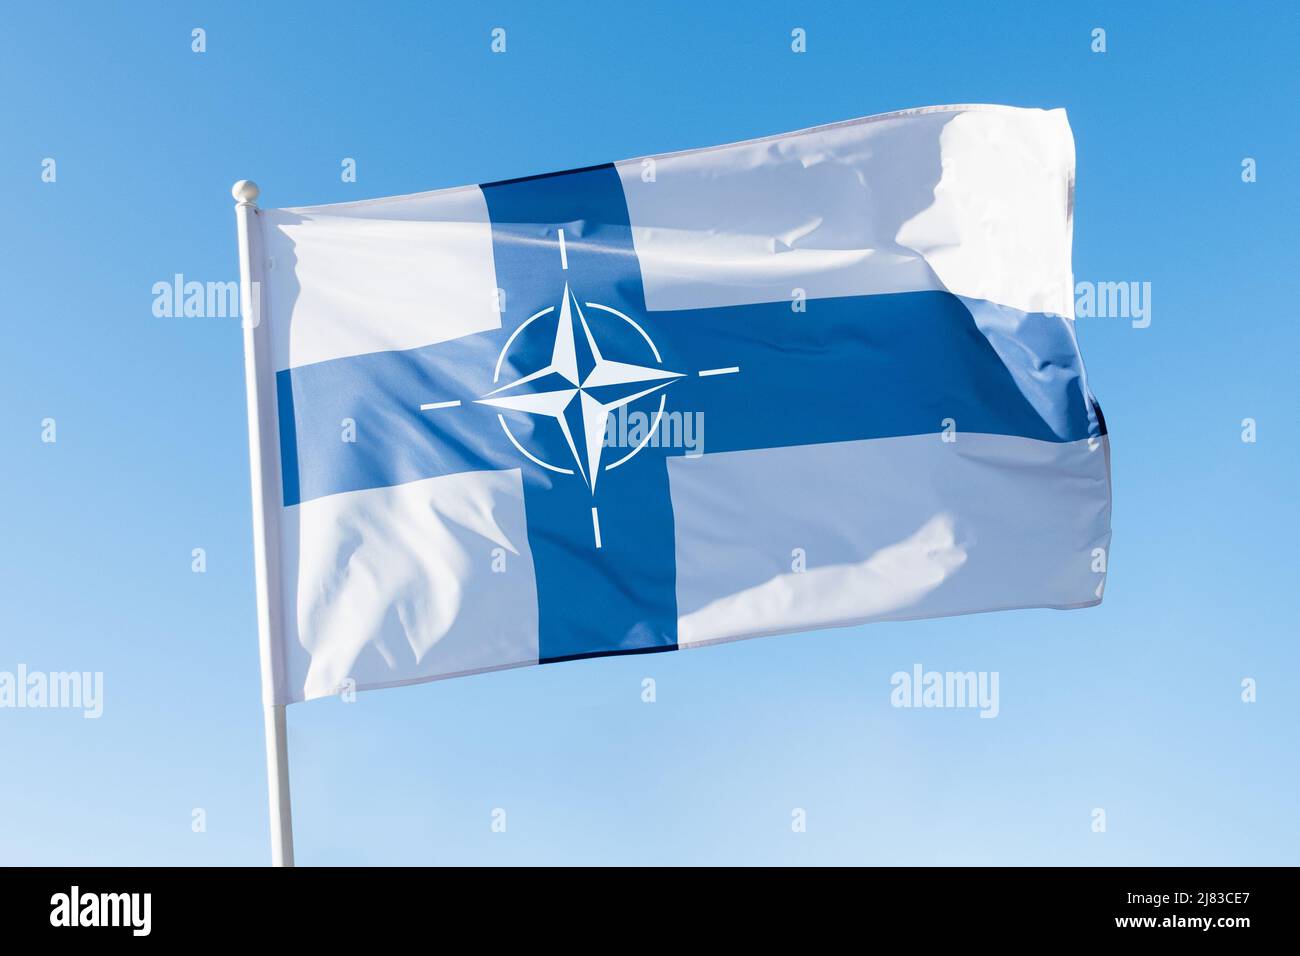 Finnland tritt dem NATO-Konzept bei. Finnische Flagge mit dem Emblem der NATO (North Atlantic Treaty Organisation) auf blauem Himmel. Stockfoto